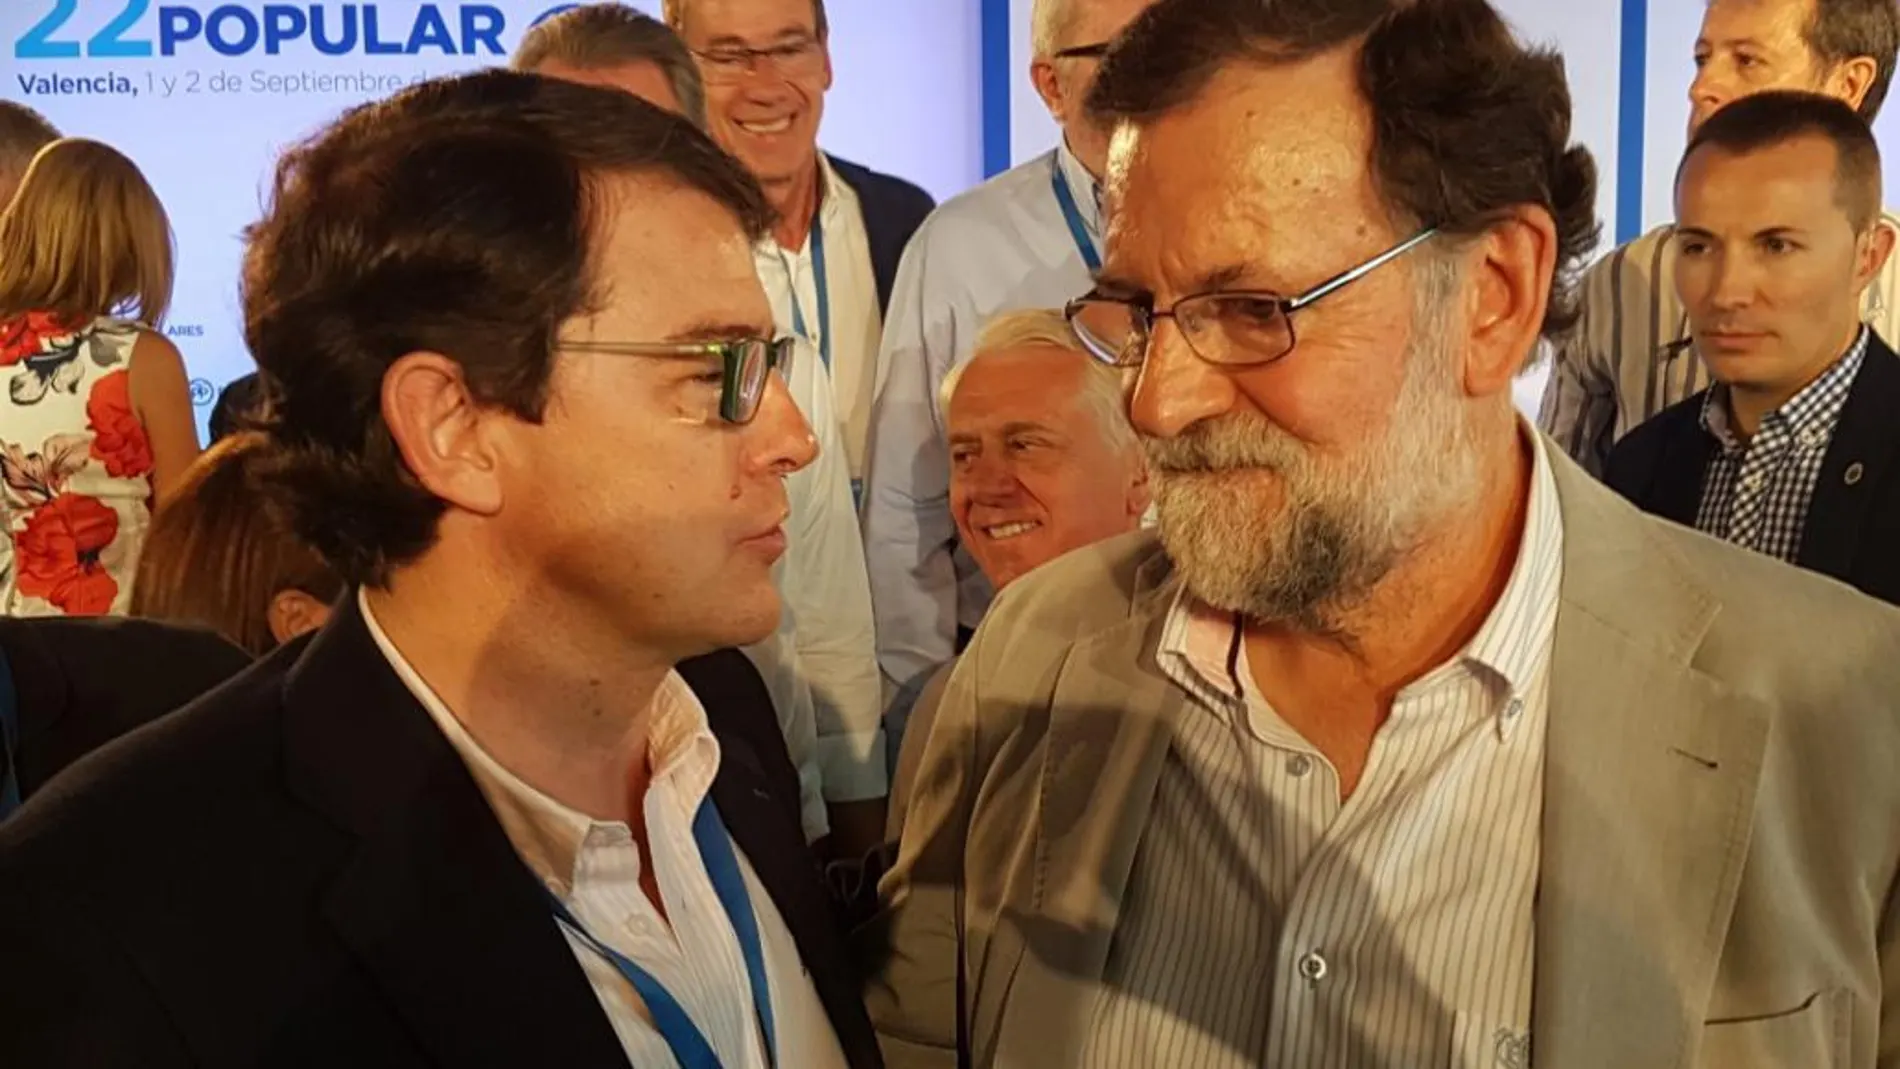 El presidente del Gobierno de España y del Partido Popular, Mariano Rajoy, conversa con el líder de los populares en Castilla y León, Alfonso Fernández Mañueco